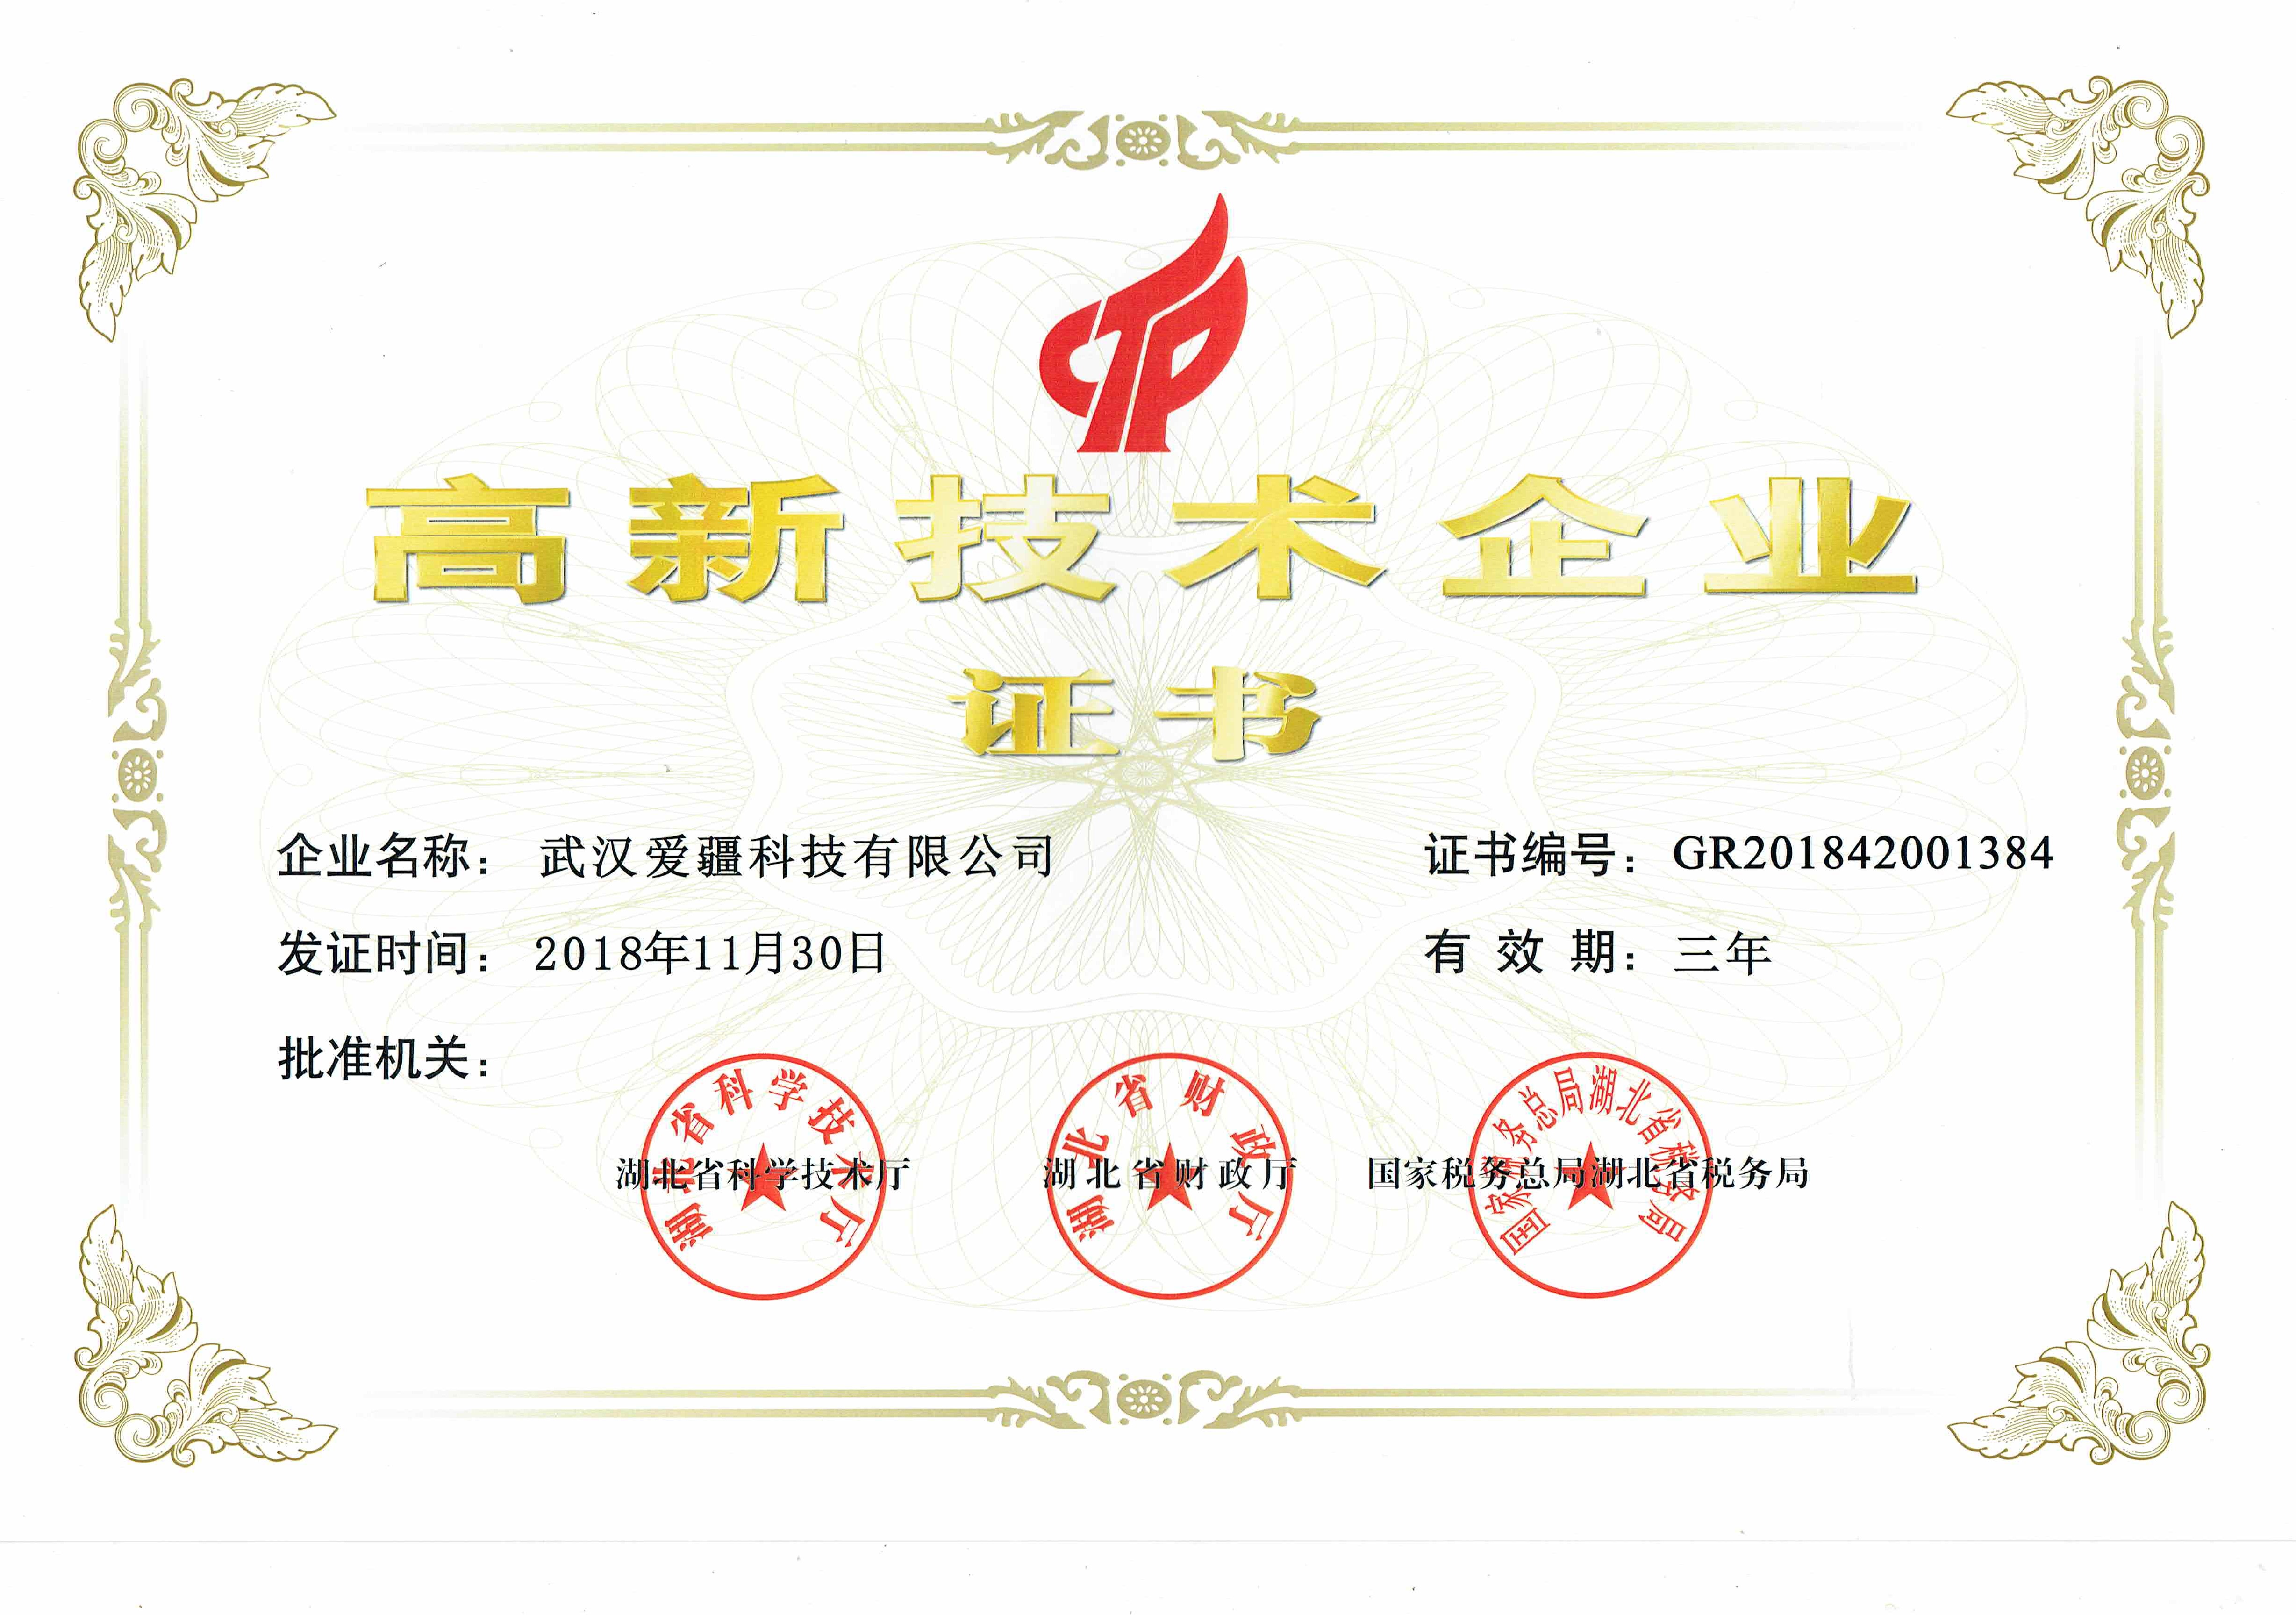 武汉爱疆科技获得 高新技术企业 认证